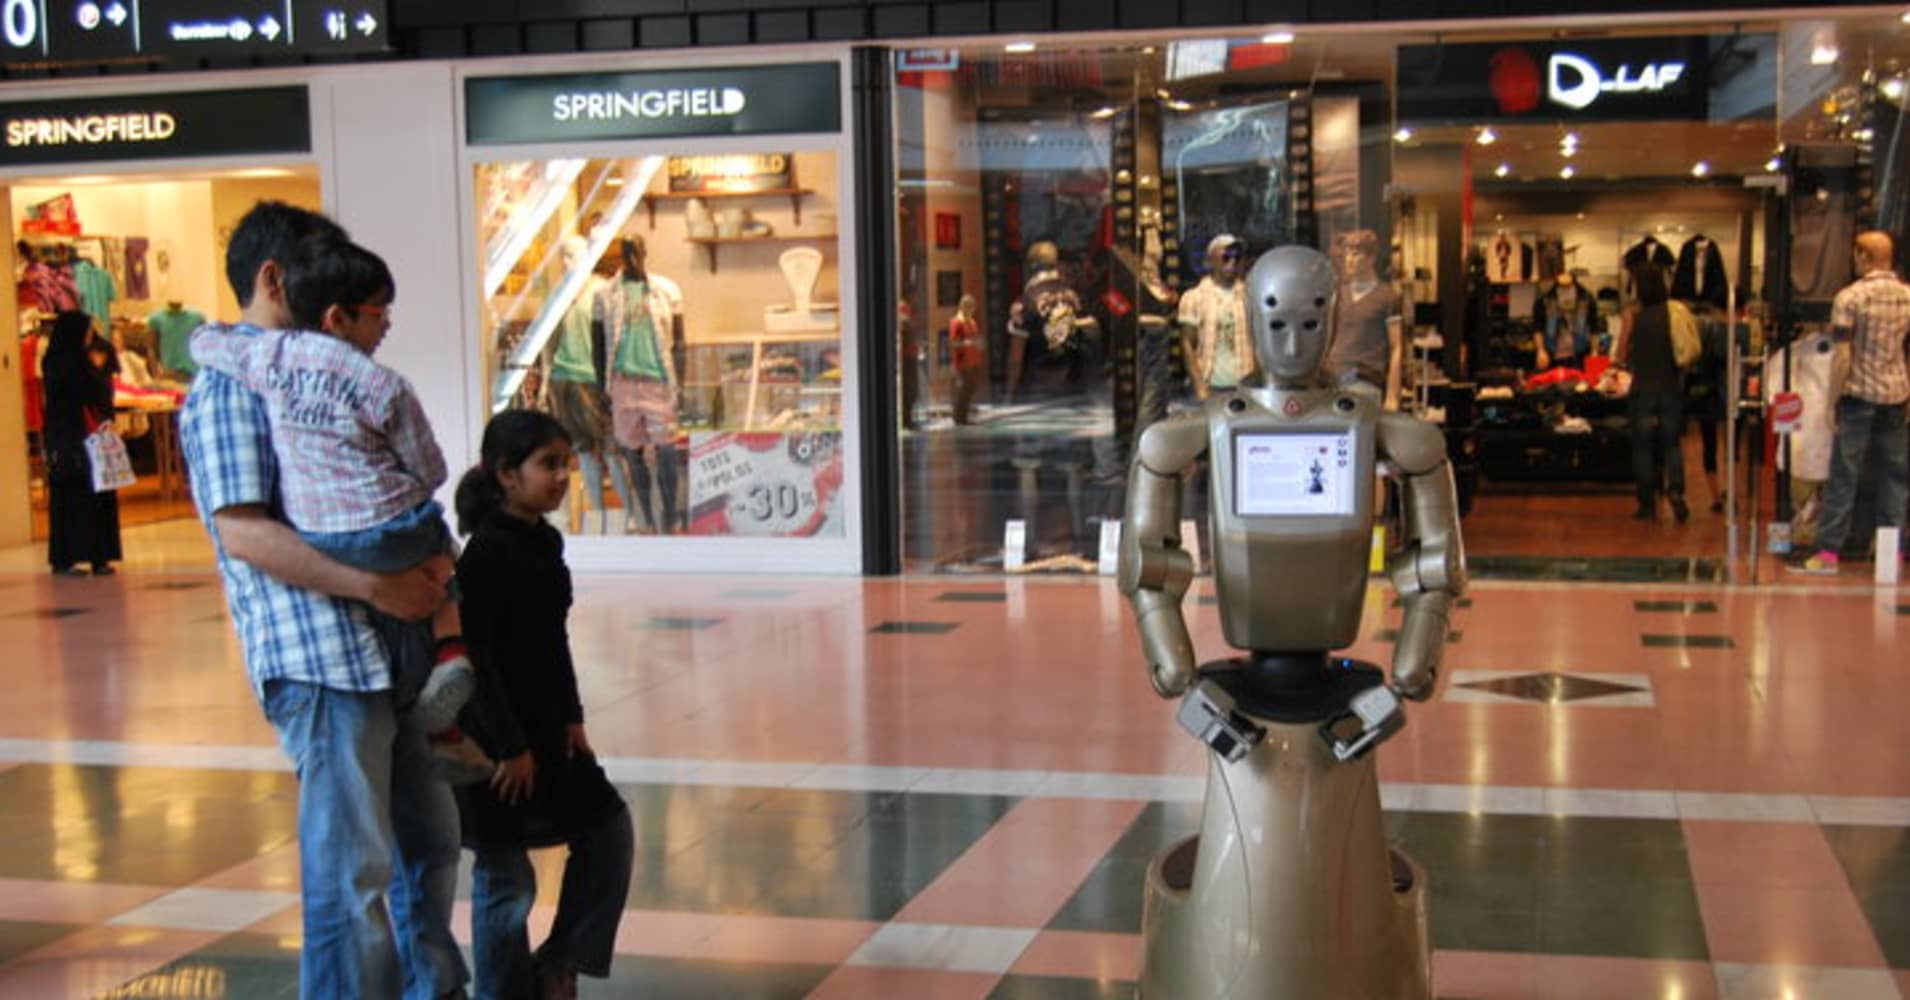 Робот Молл. Робот магазина Power. Boilerplate робот. Робот и шопинг картинки.